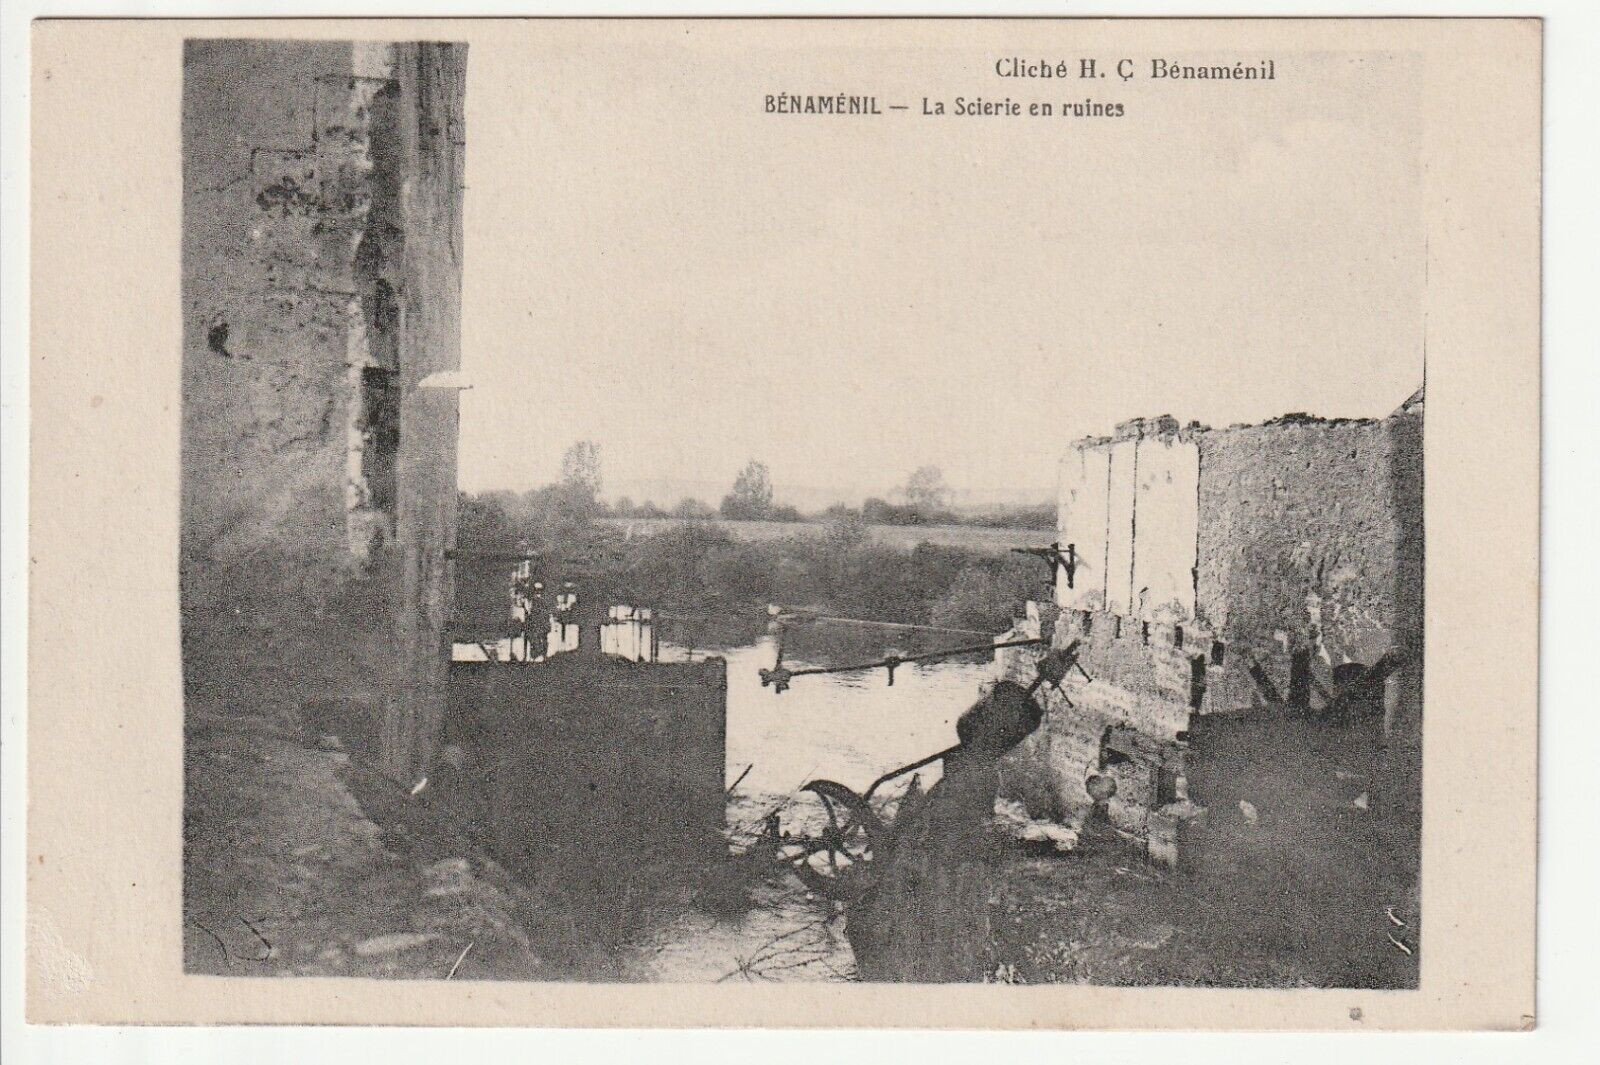 BENAMENIL - Meurthe & Moselle - CPA 54 - the sawmill in ruins